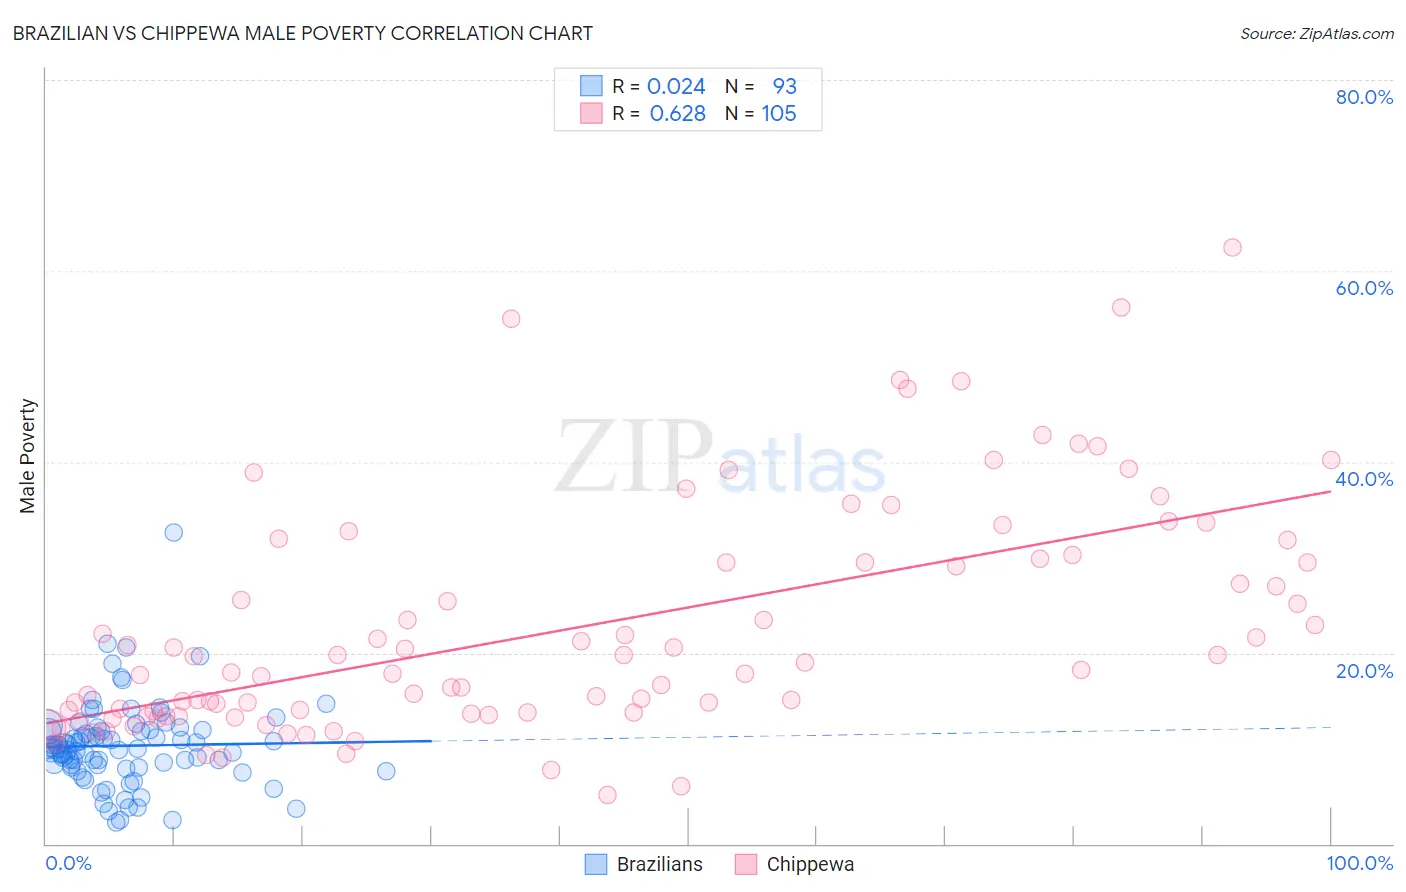 Brazilian vs Chippewa Male Poverty